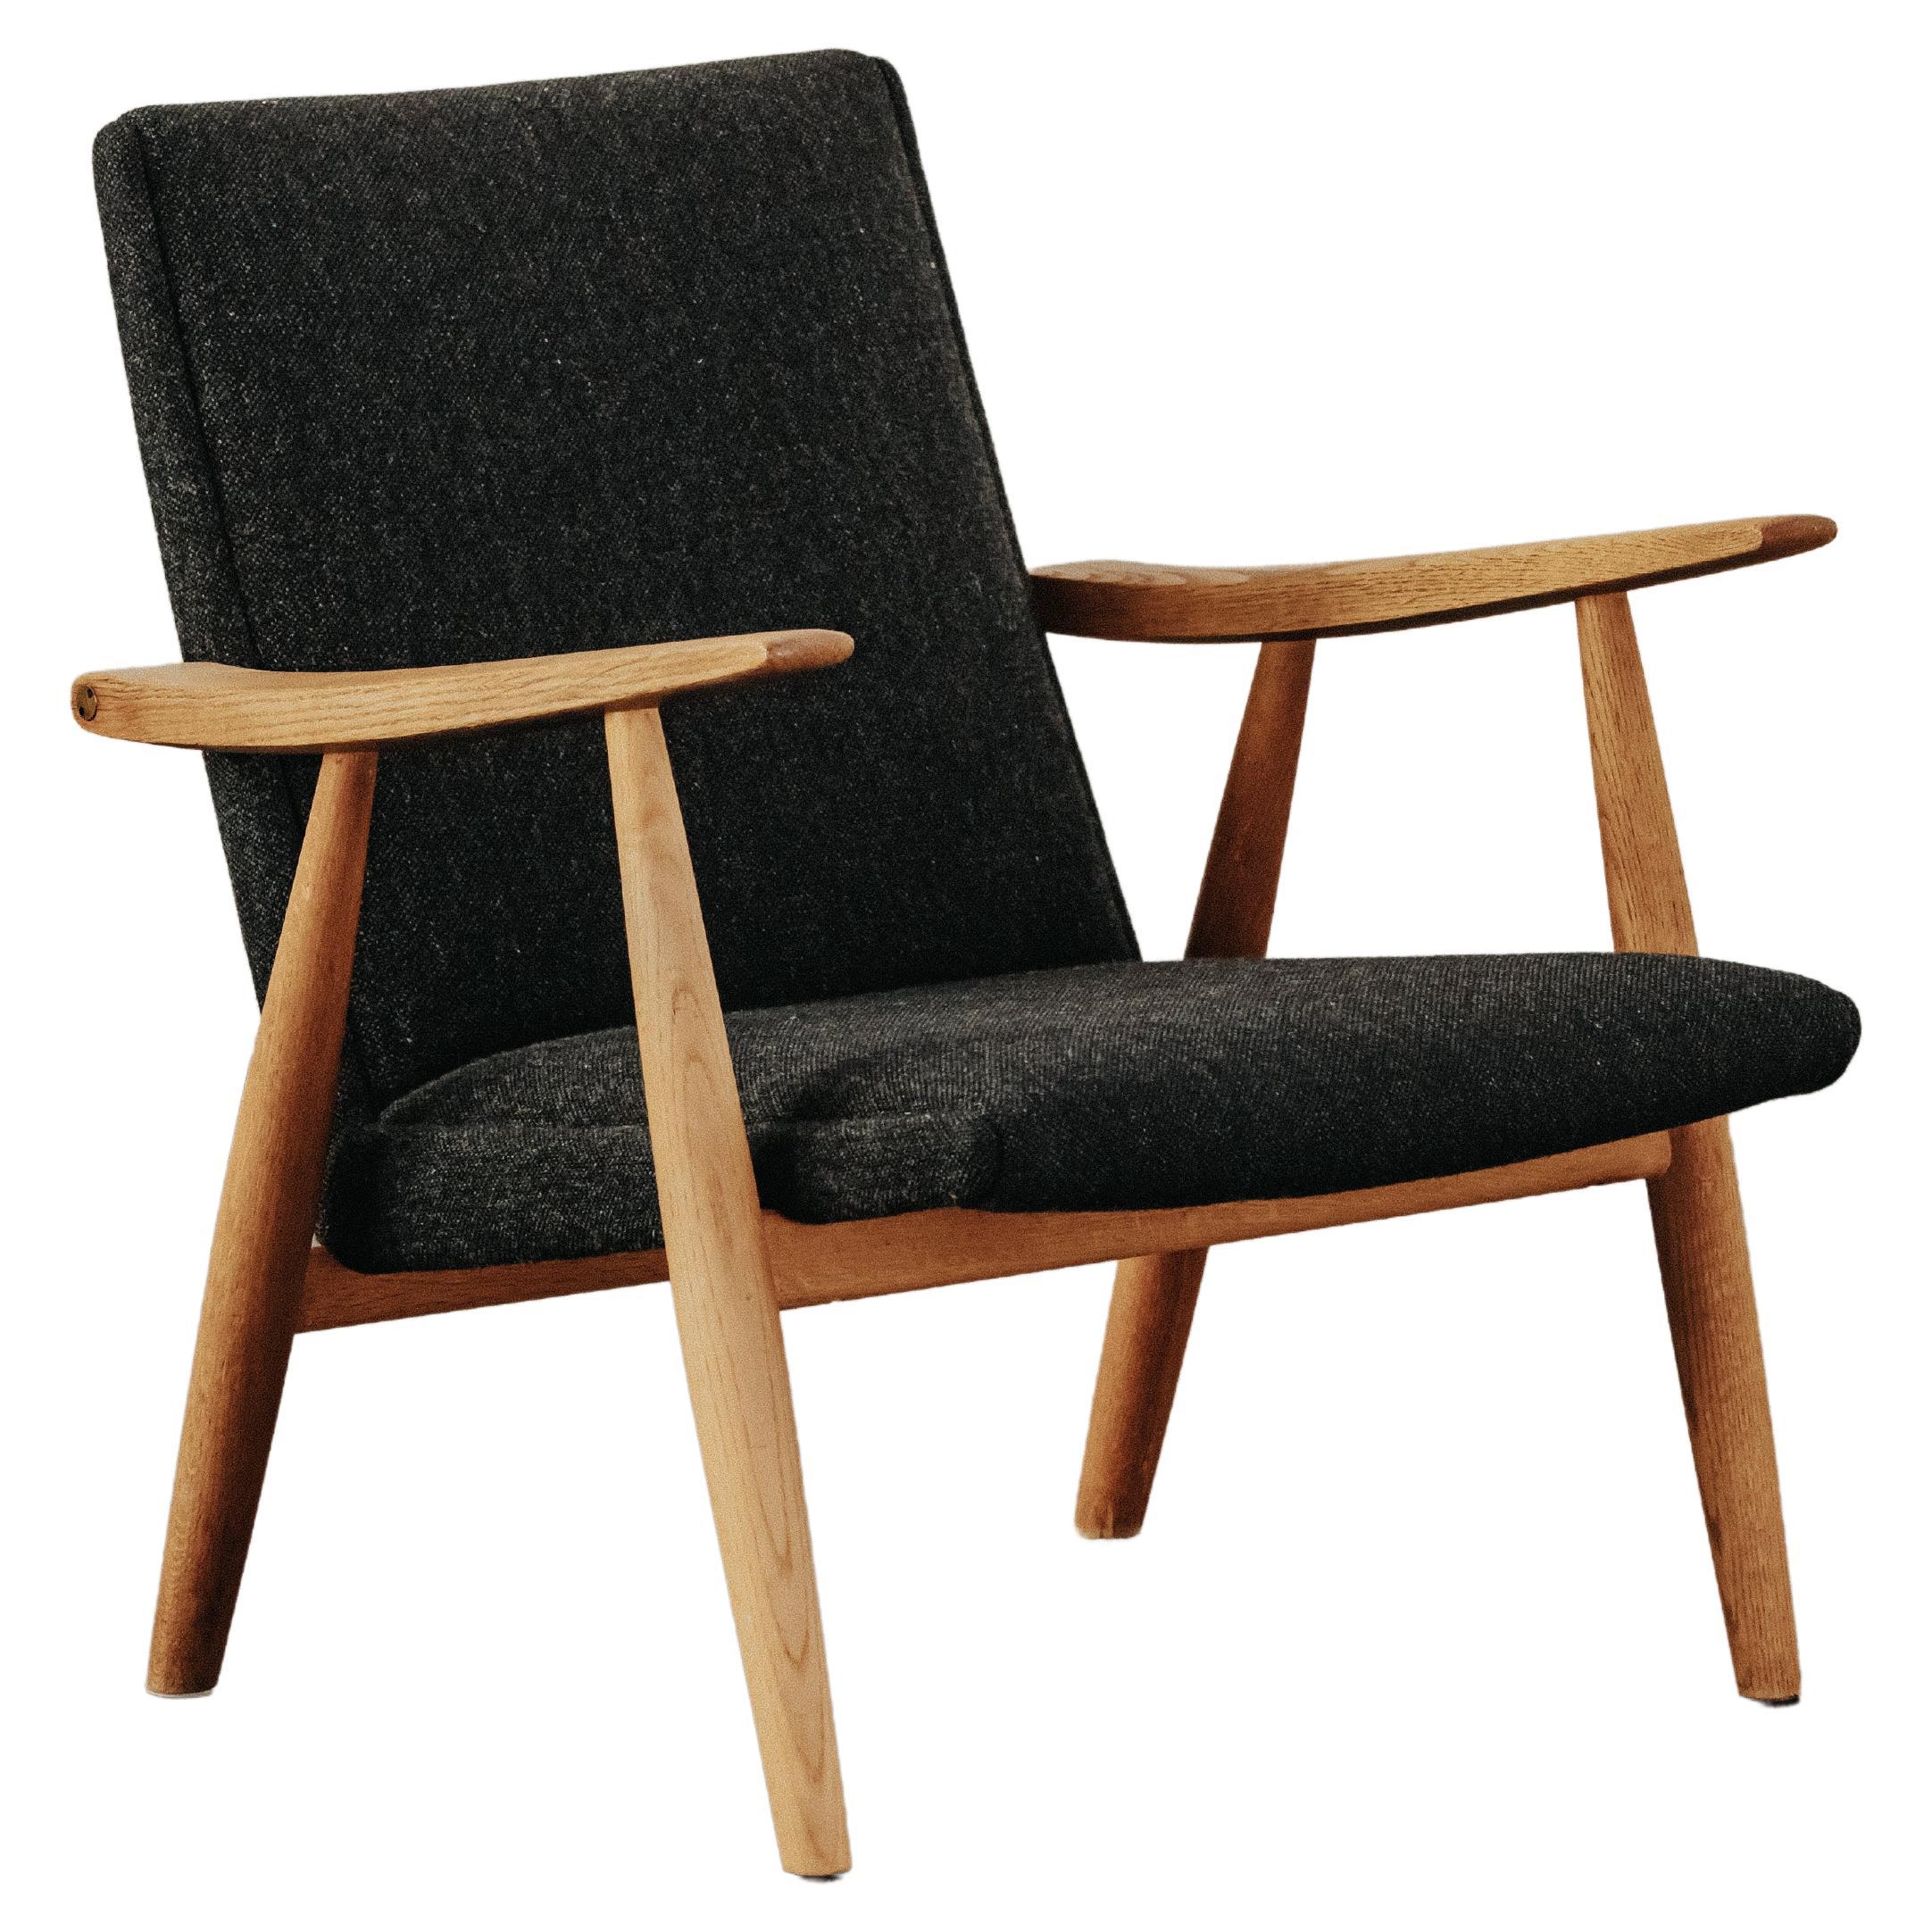 Vintage Oak Hans Wegner Lounge Chair, Model 260, from Denmark, circa 1960 For Sale